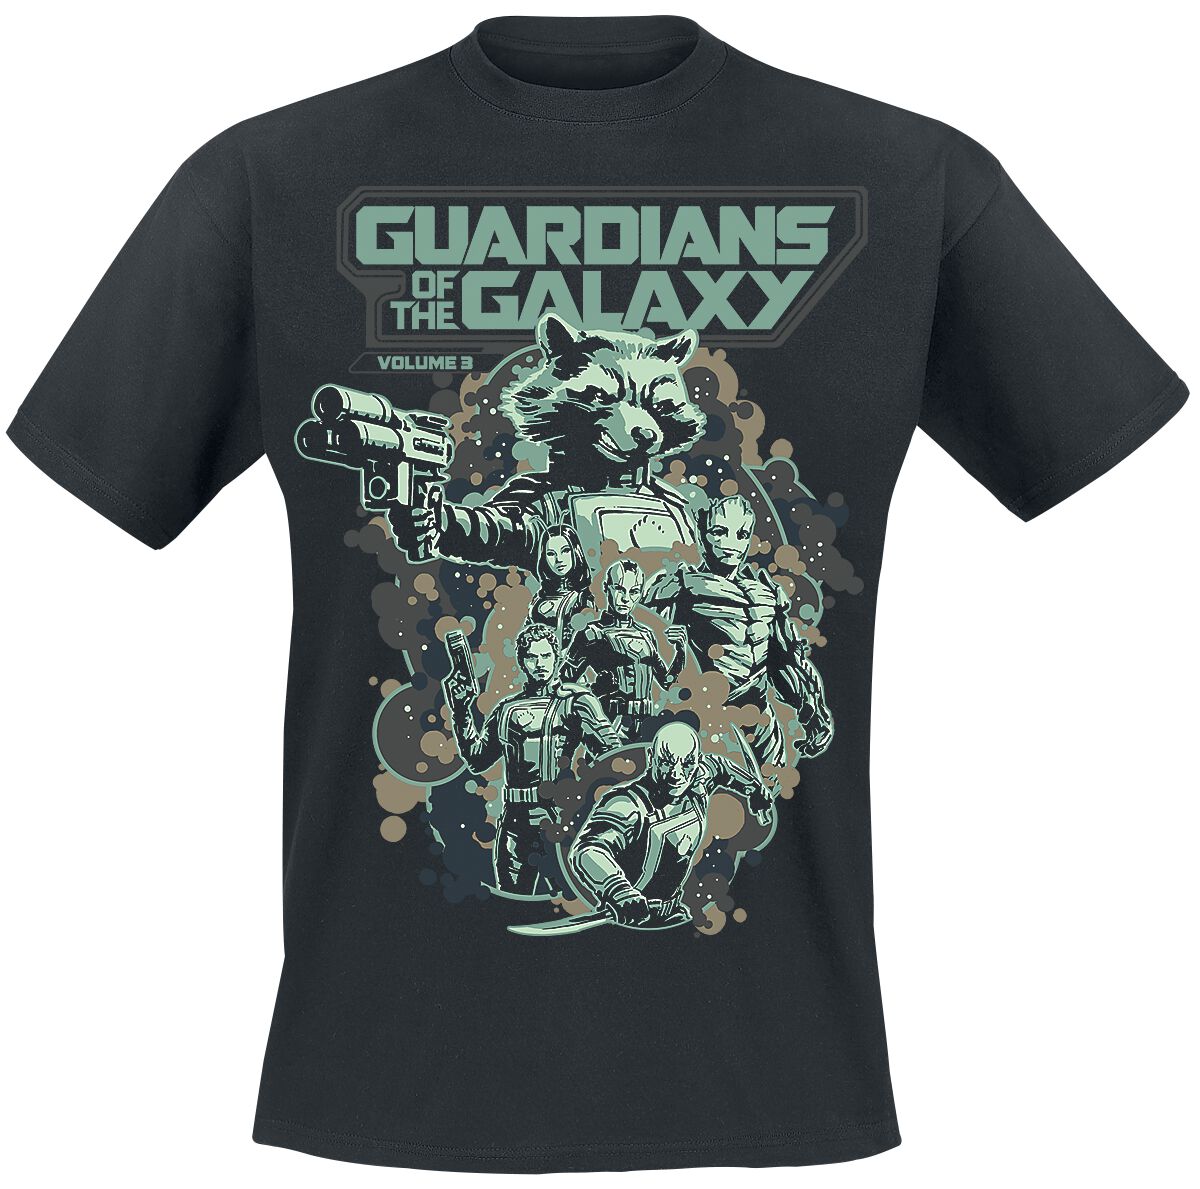 Guardians Of The Galaxy - Marvel T-Shirt - Vol. 3 - Galactic Heroes - S bis L - für Männer - Größe L - schwarz  - EMP exklusives Merchandise!